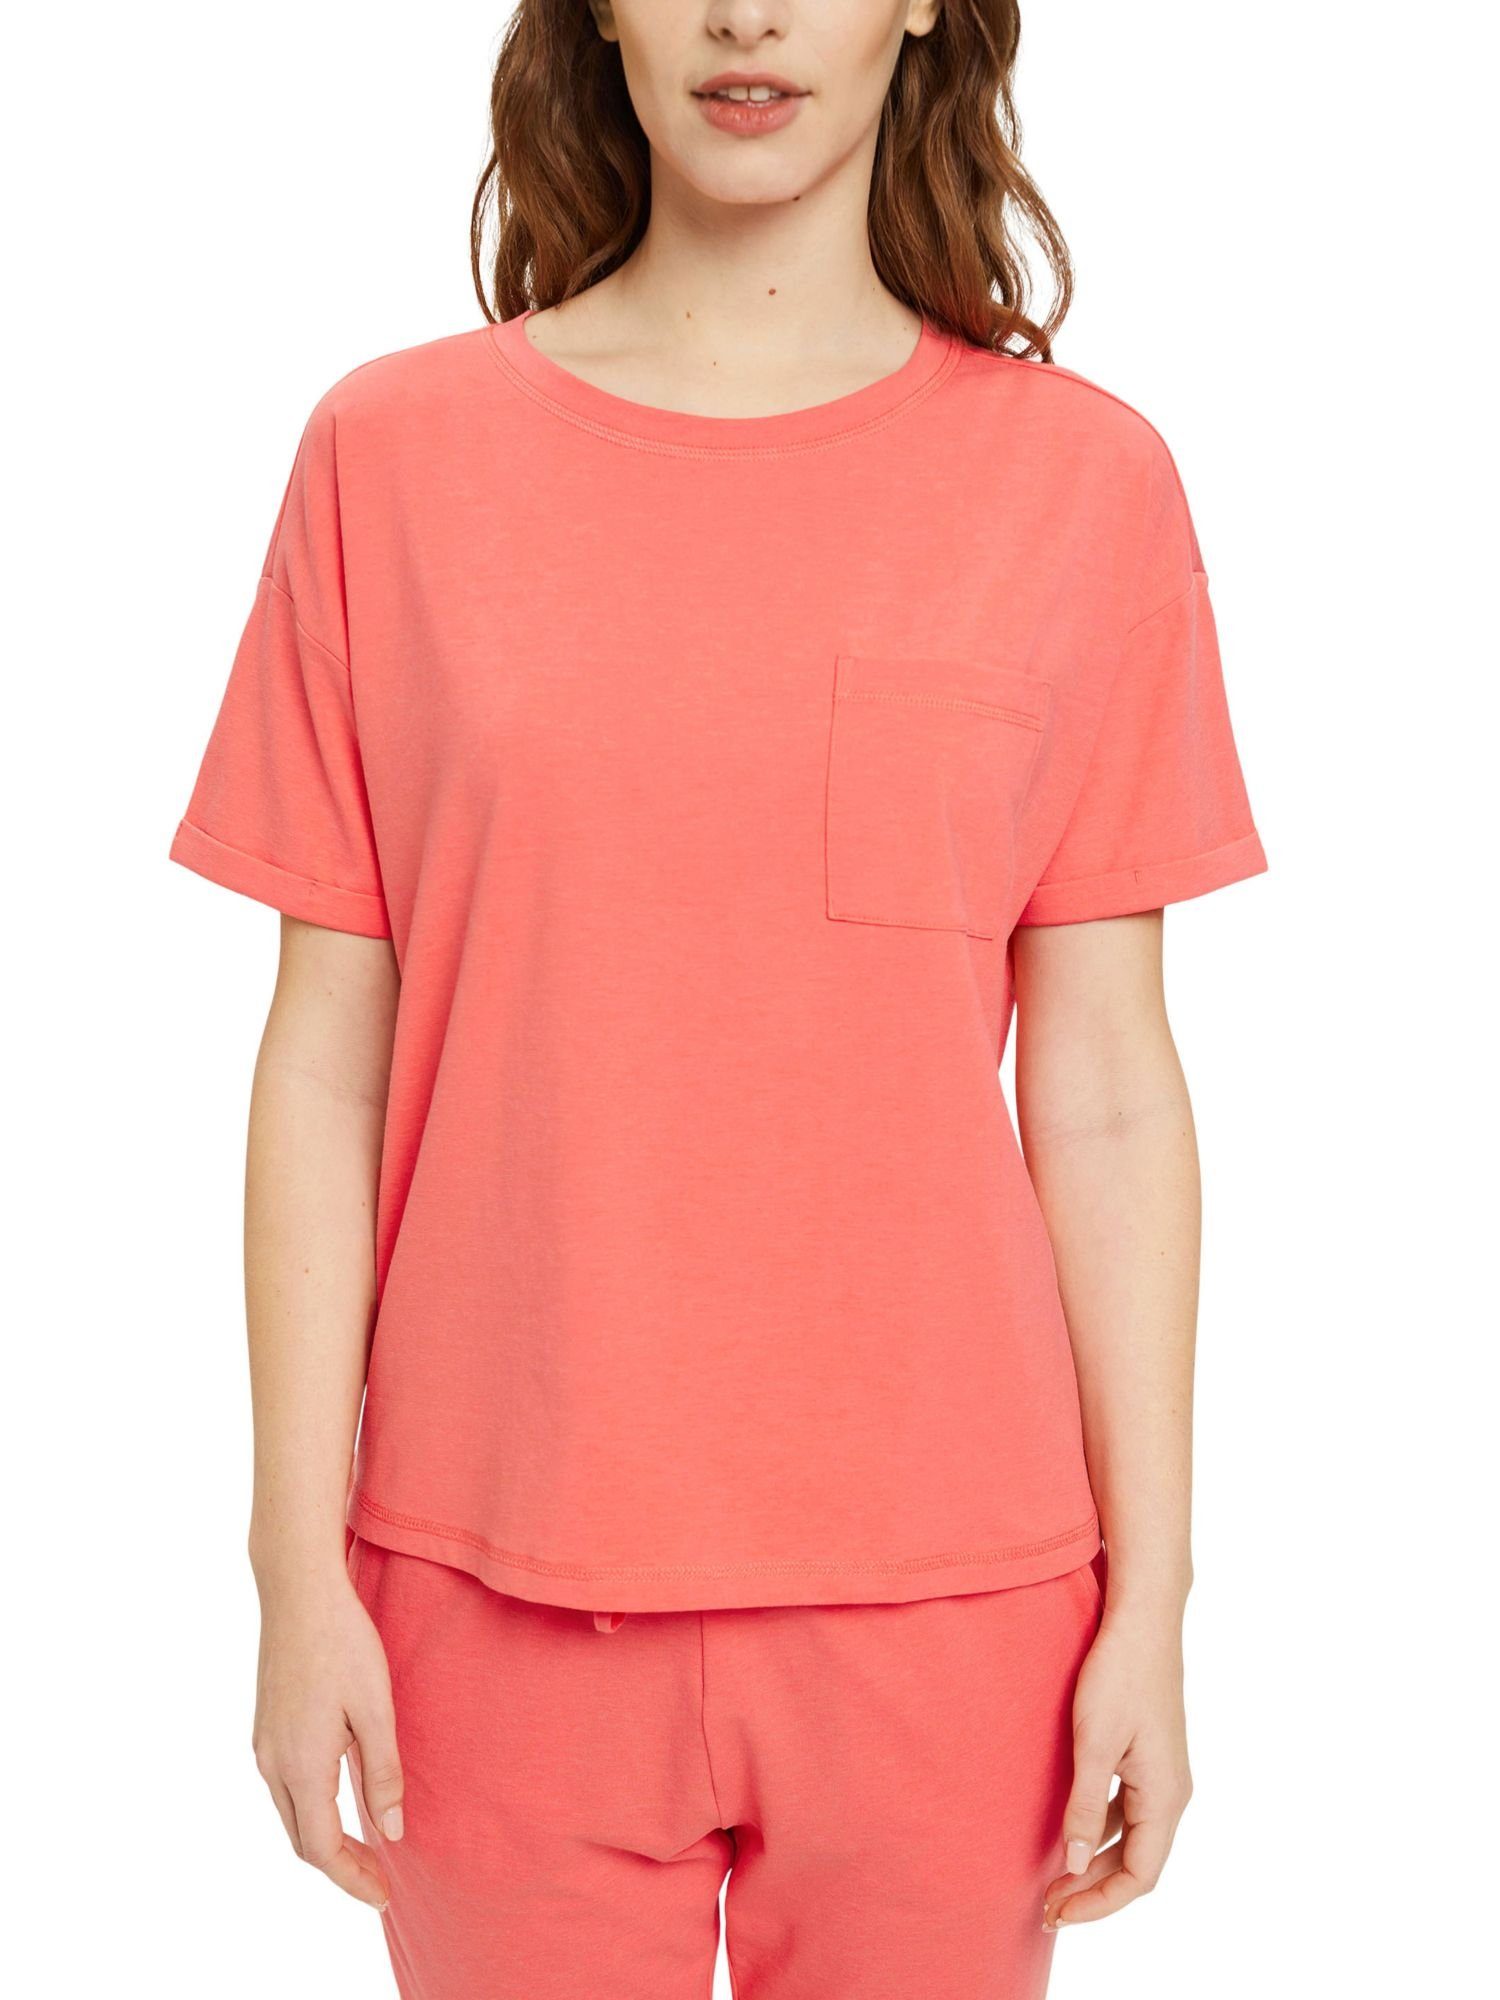 T-Shirt Brusttasche CORAL Pyjamaoberteil Baumwoll-Mix Esprit mit aus